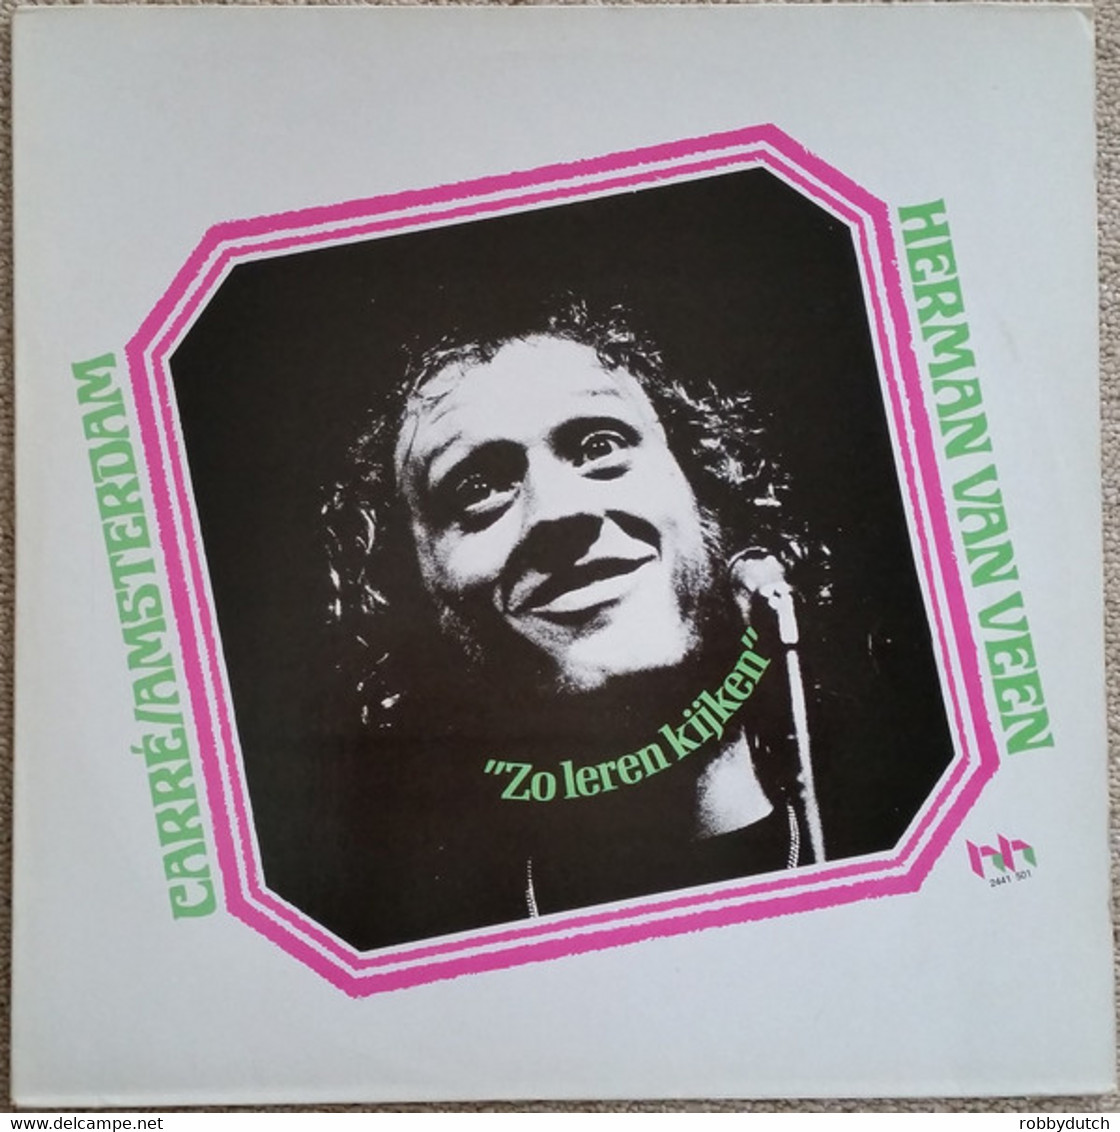 * LP *  HERMAN VAN VEEN - CARRÉ / AMSTERDAM - ZO LEREN KIJKEN (Holland 1973) - Autres - Musique Néerlandaise